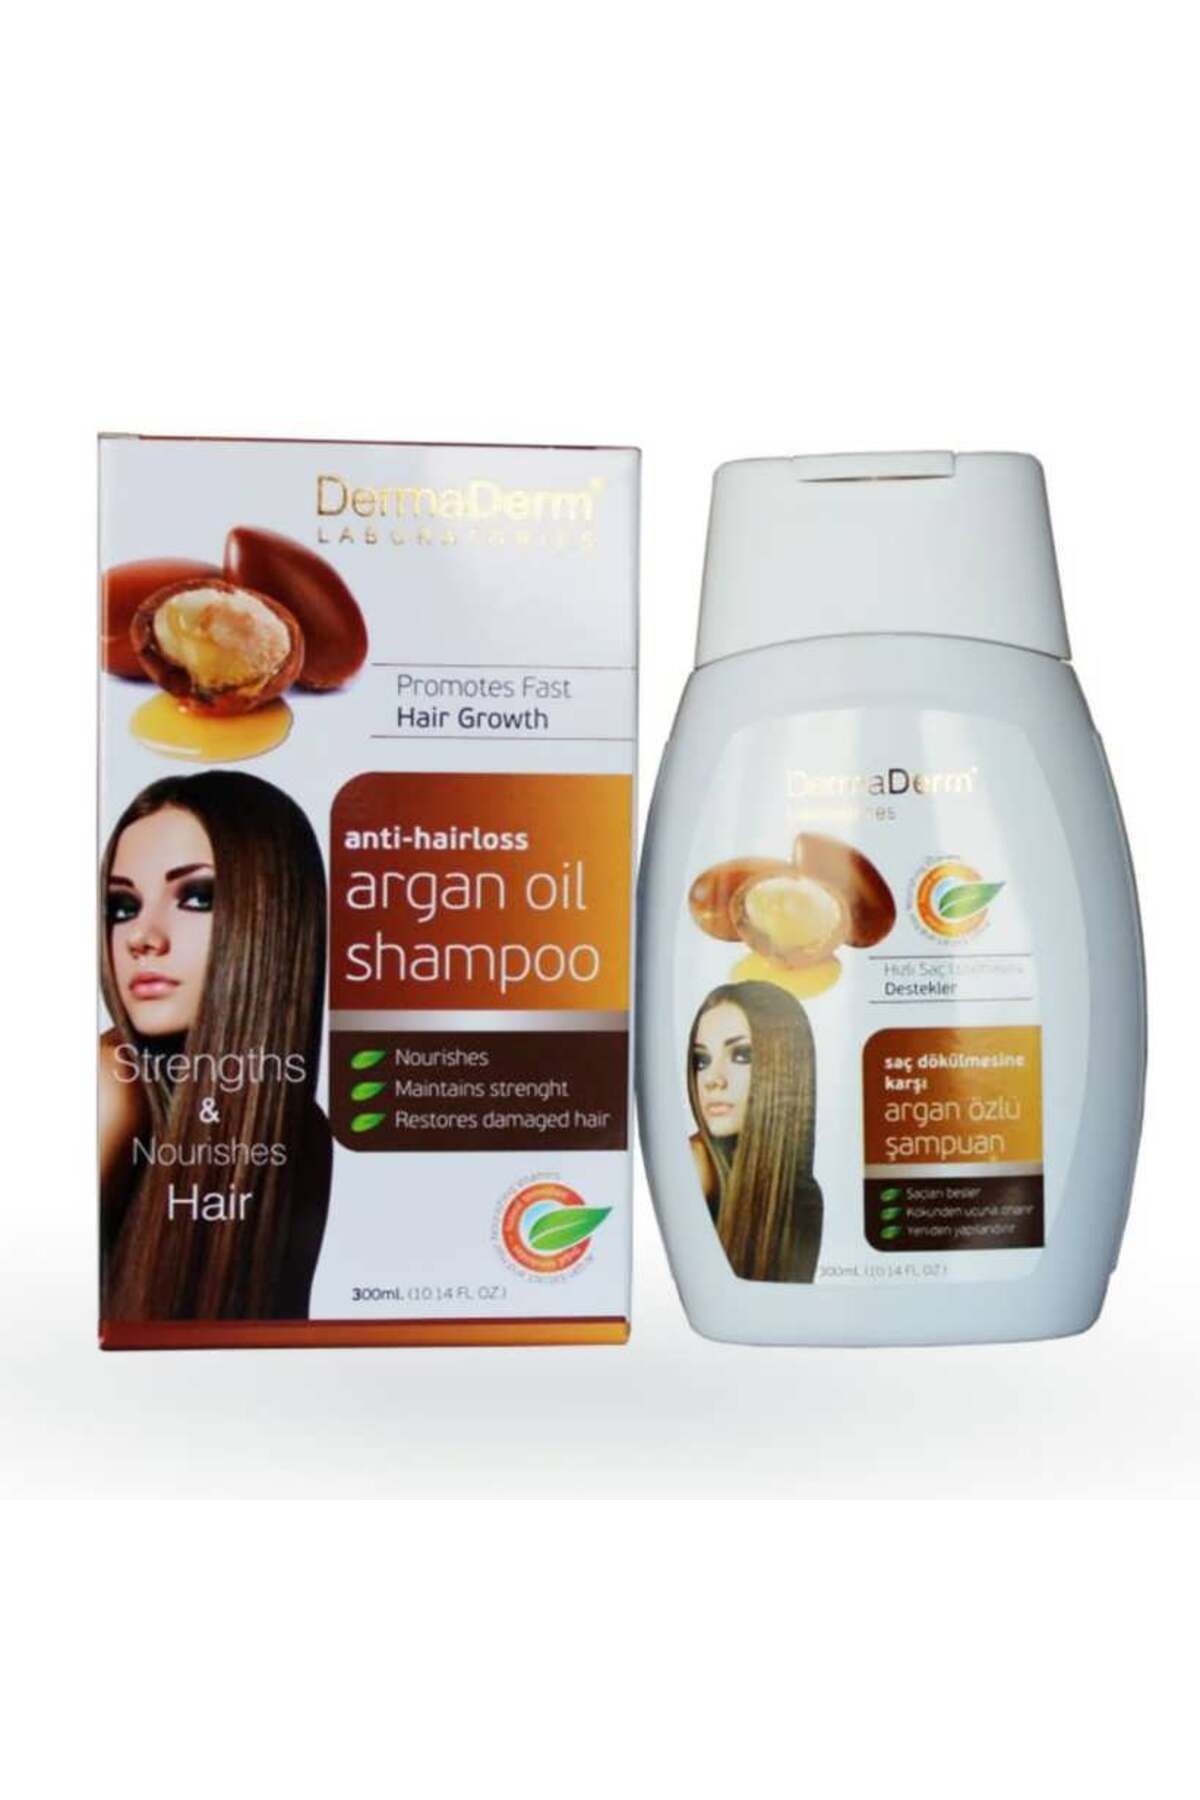 DermaDerm Argan Yağı Özlü Şampuan 250ml Saç Dökülmesine Karşı